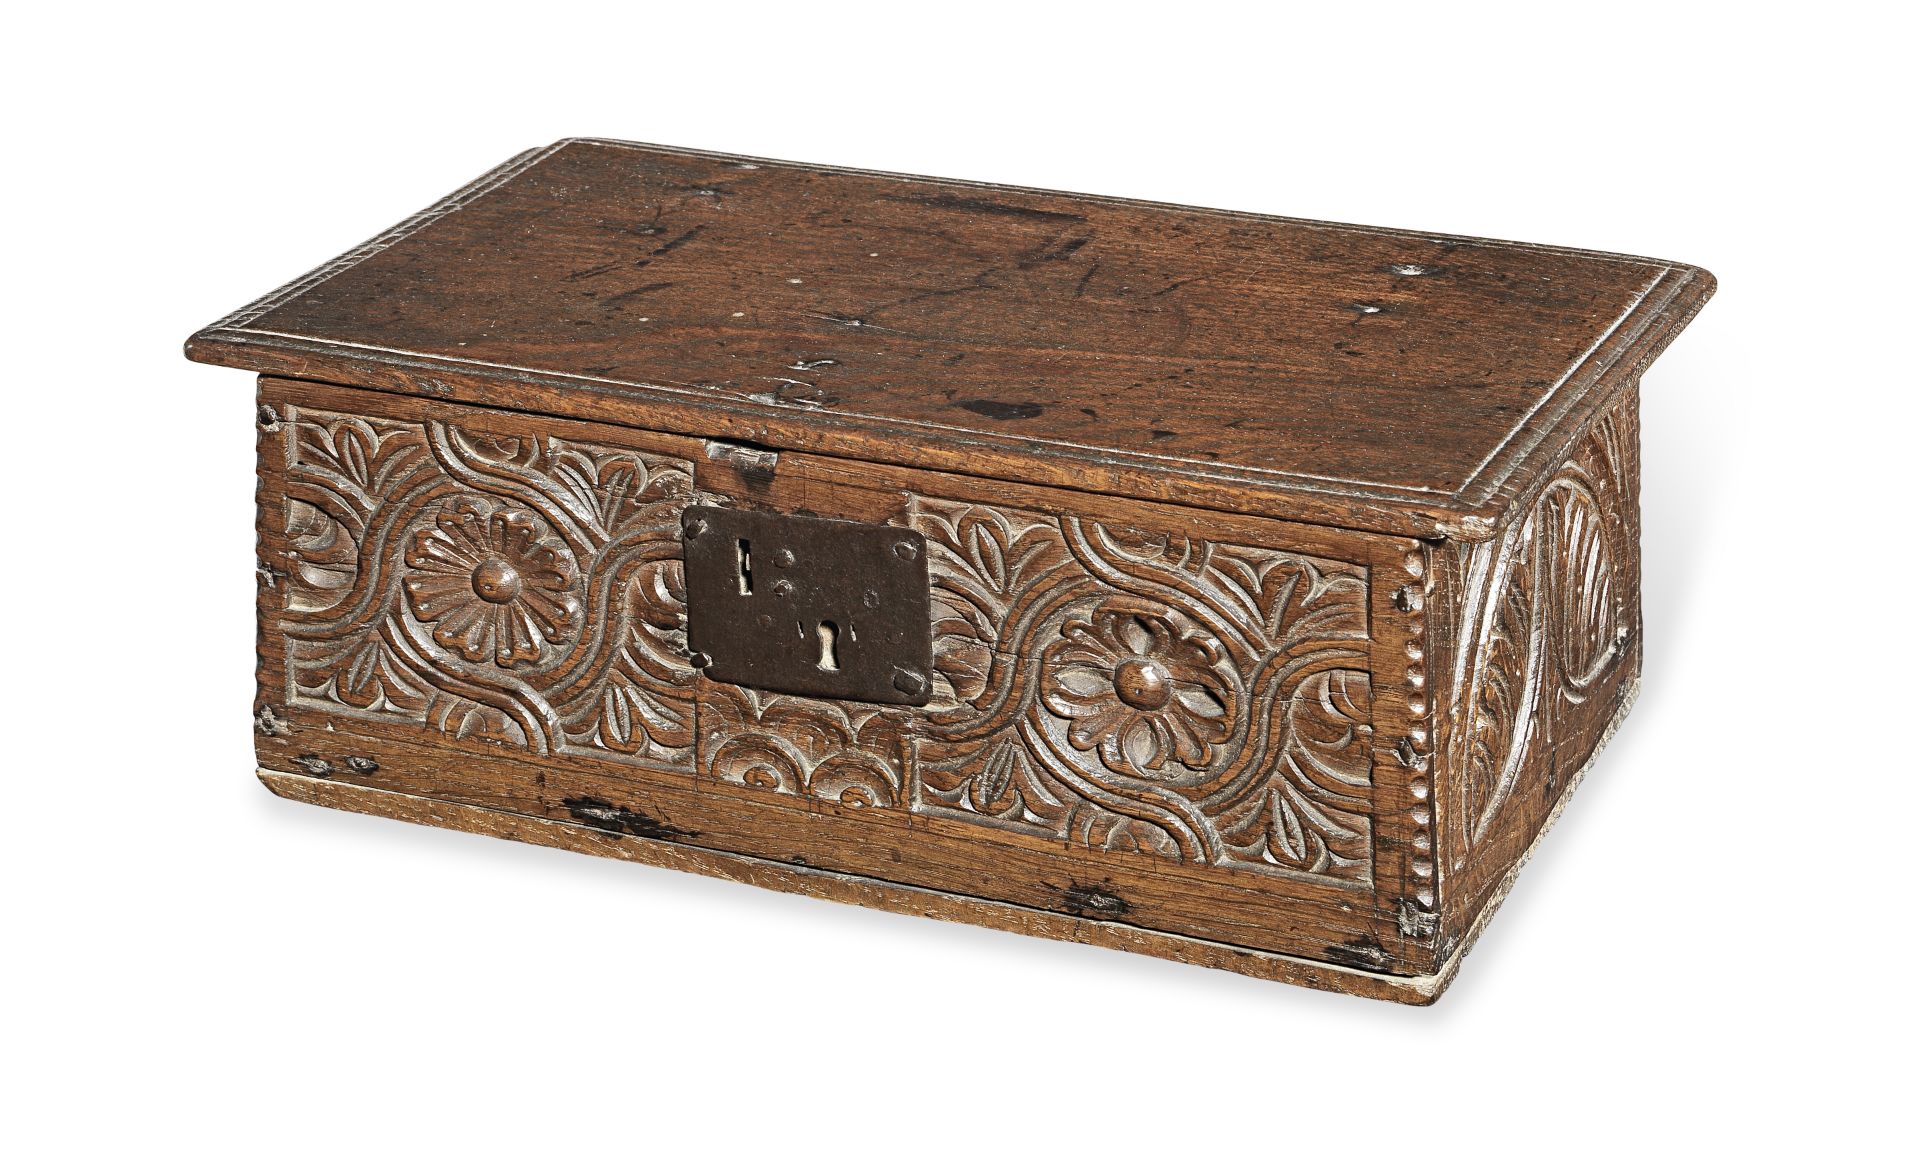 A small Charles I boarded oak box, circa 1640